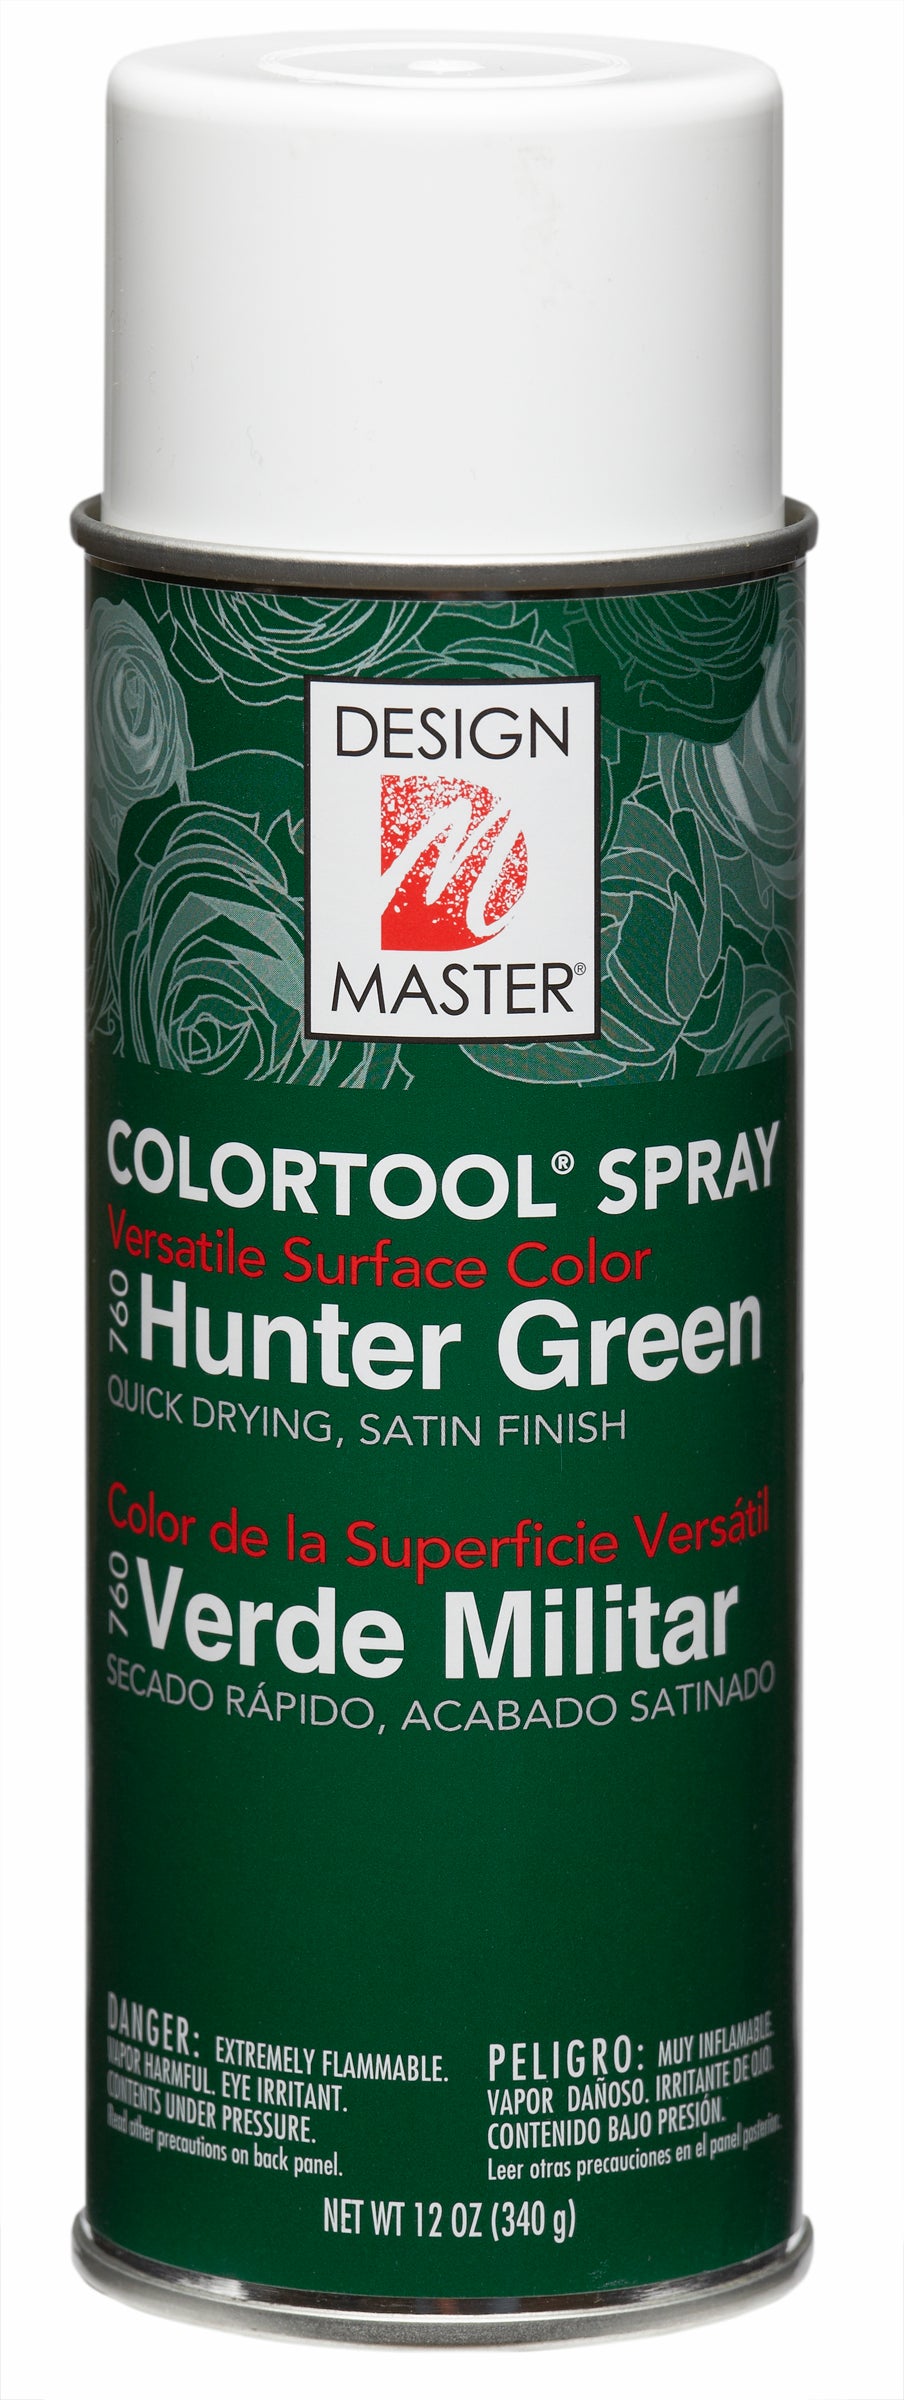 Design Master Colortool Spray-Hunter Green